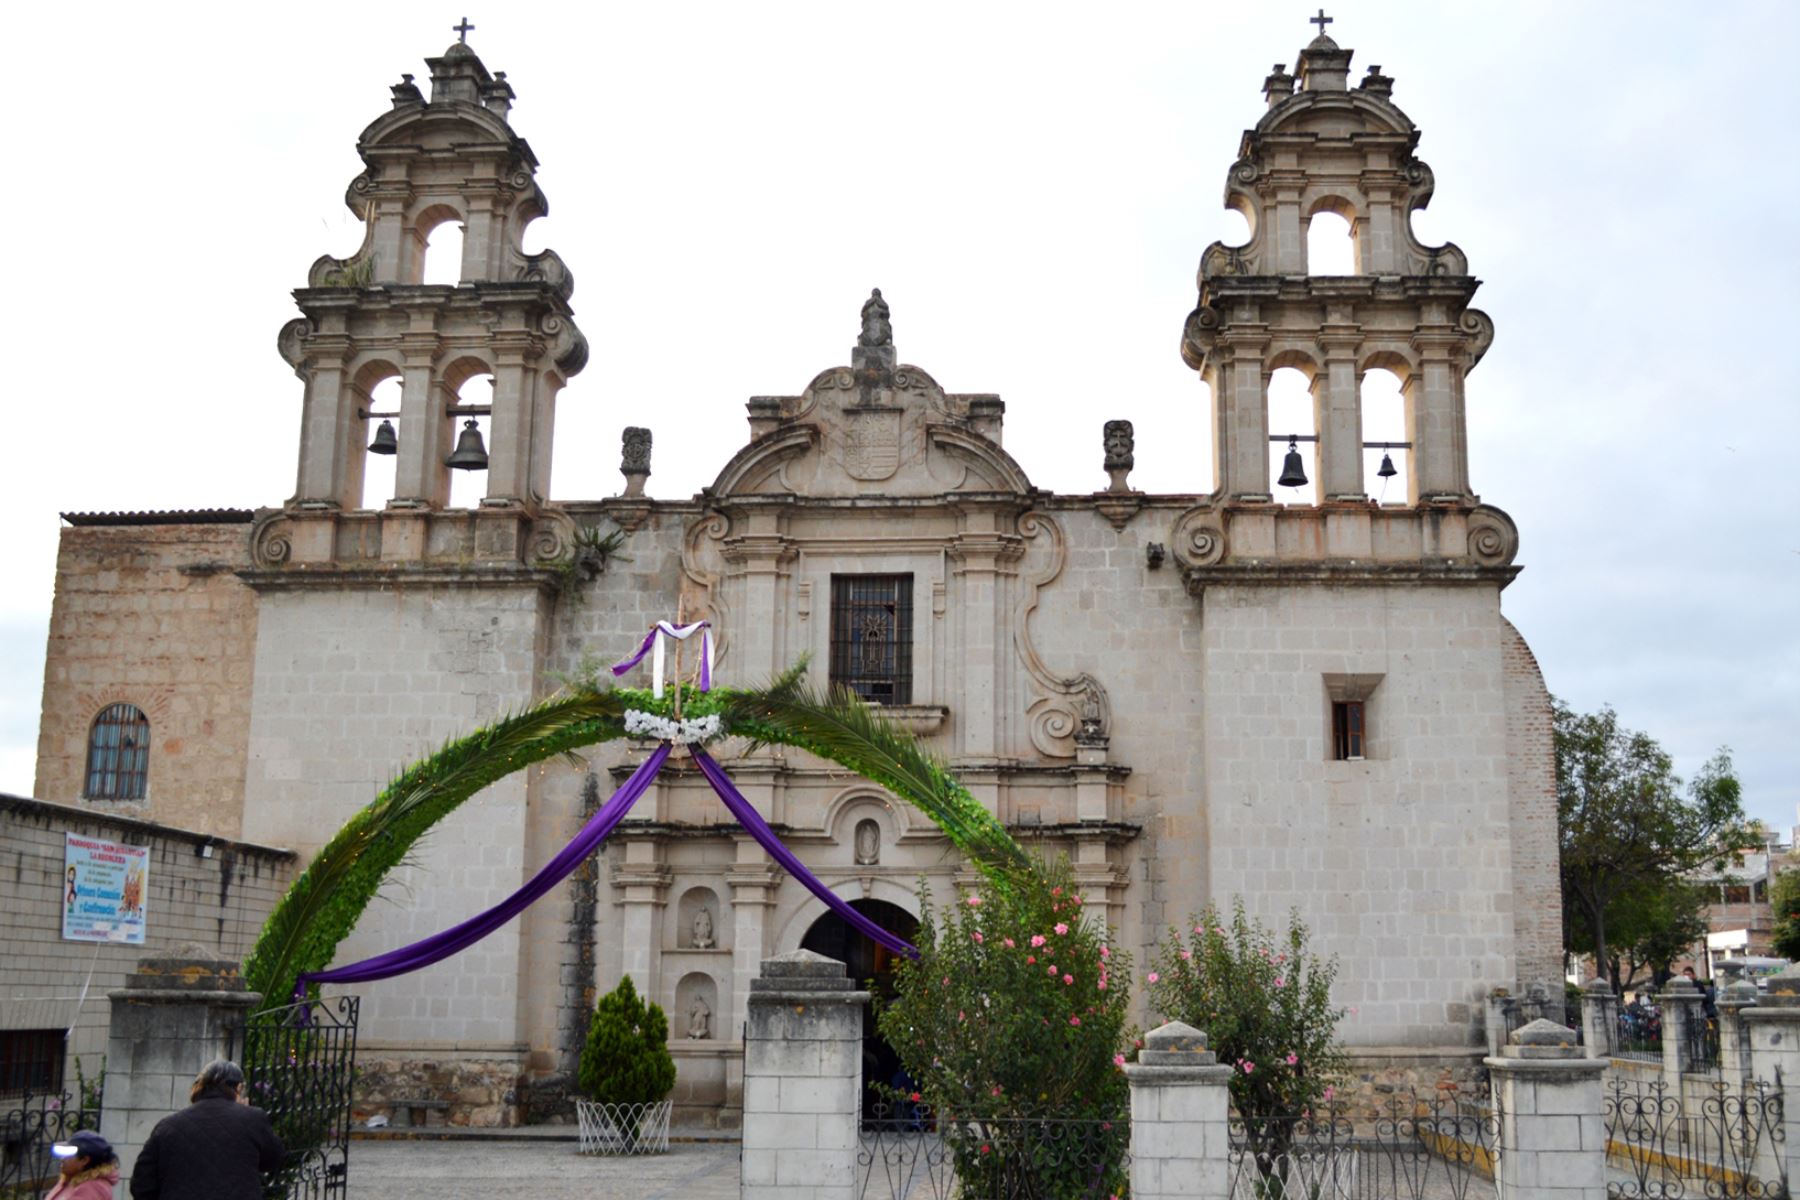 En los accesos a la plaza de Armas de Cajamarca y en algunas iglesias, la municipalidad provincial instaló arcos gigantes cubiertos de hojas y flores, y una estructura metálica en el centro de la plaza con la imagen de Cristo Redentor. Foto: ANDINA/Cortesía Eduard Lozano